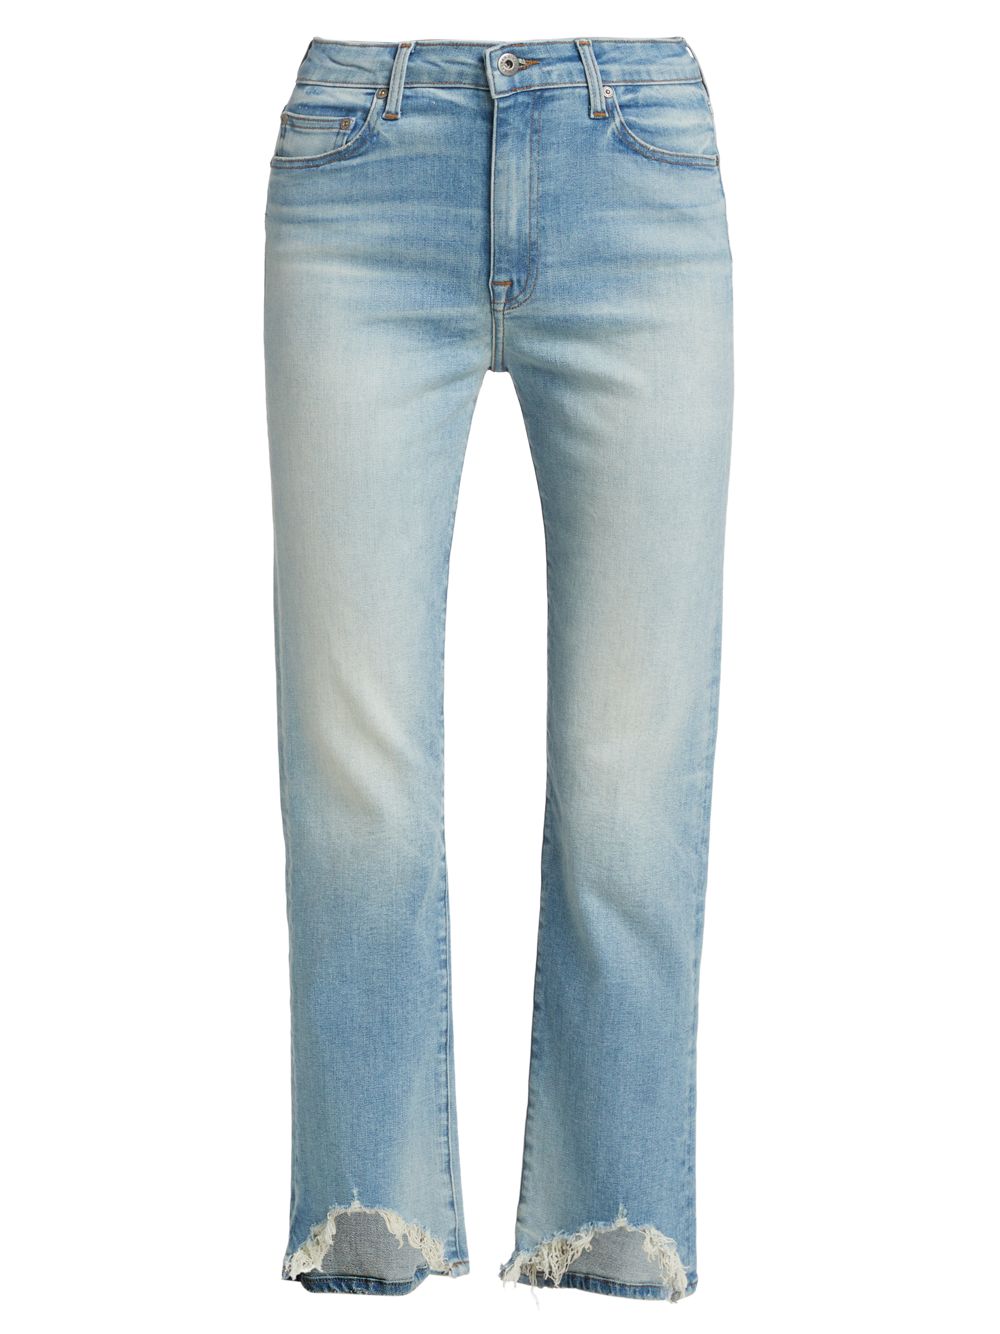 Эластичные прямые джинсы River с высокой посадкой и эффектом потертости Jonathan Simkhai Standard, винтаж